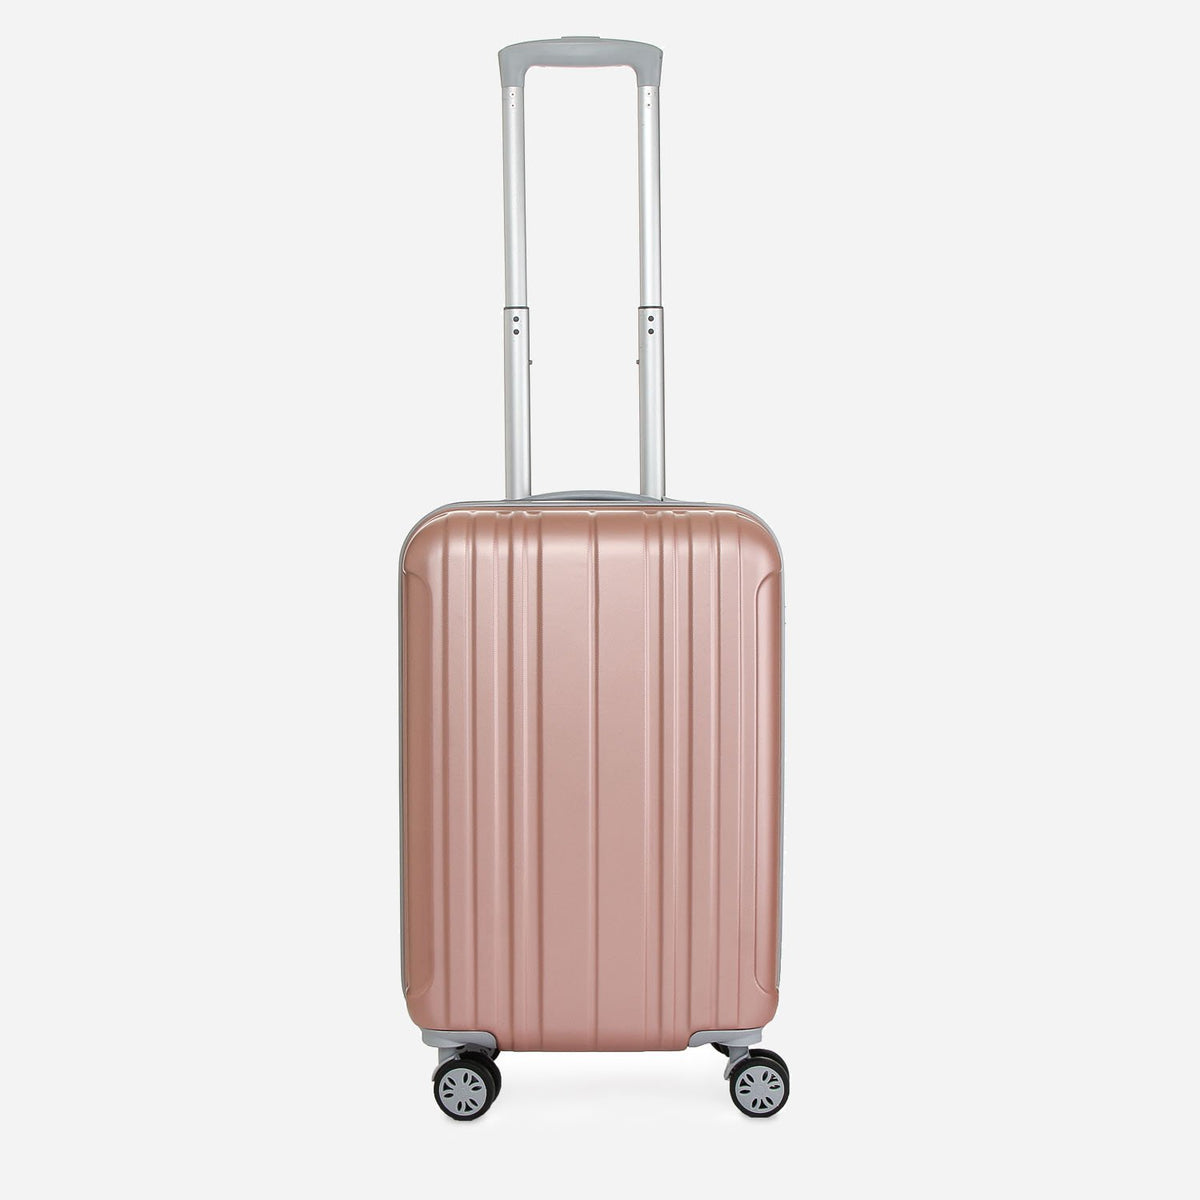 travel basic luggage brand